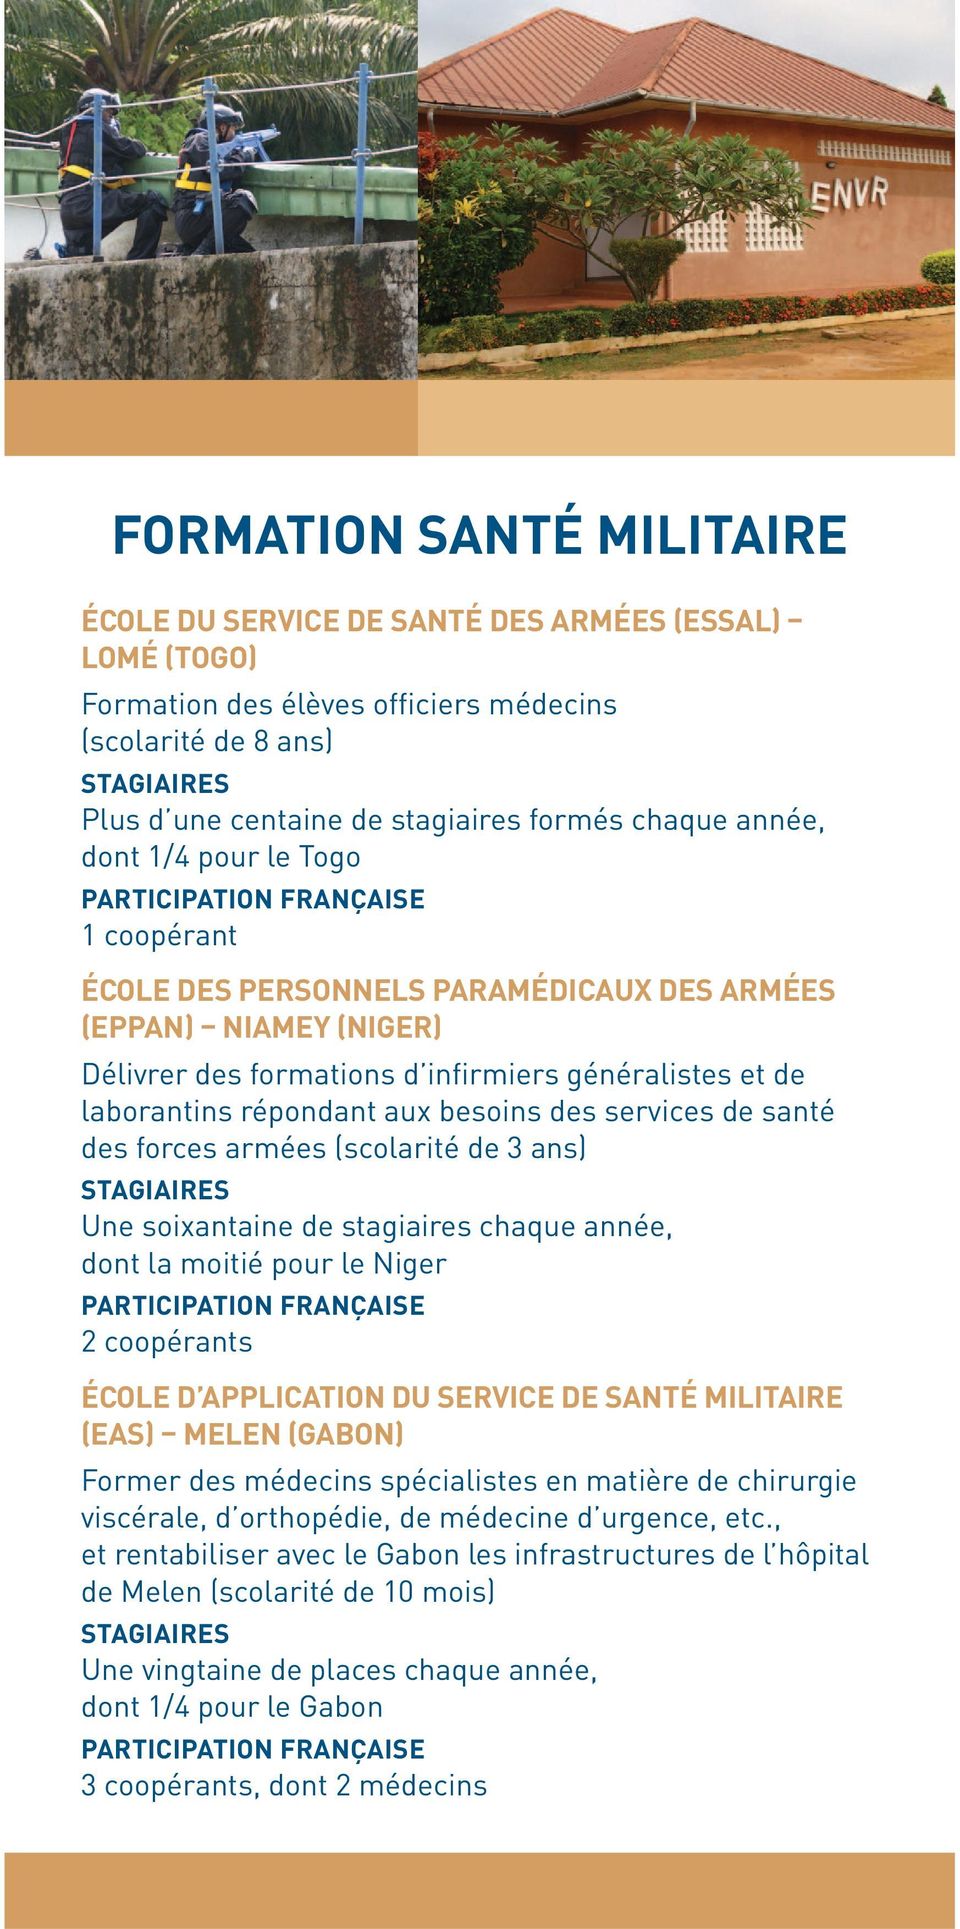 services de santé des forces armées (scolarité de 3 ans) Une soixantaine de stagiaires chaque année, dont la moitié pour le Niger ÉCOLE D APPLICATION DU SERVICE DE SANTÉ MILITAIRE (EAS) MELEN (GABON)